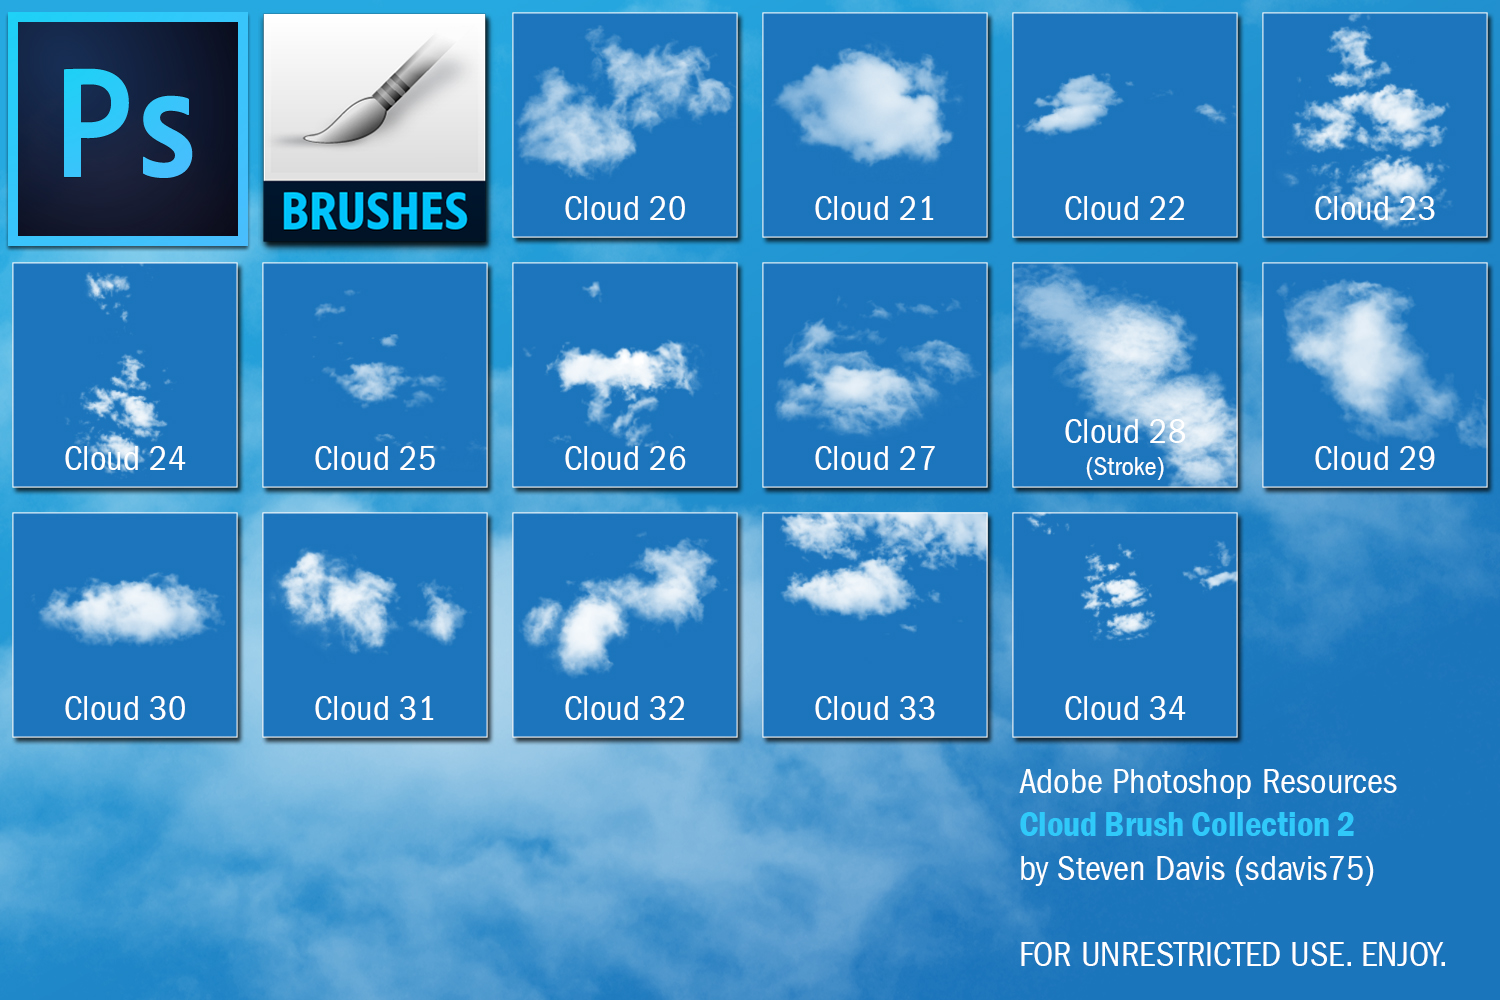 6 Cloud Brushes Photoshop Images